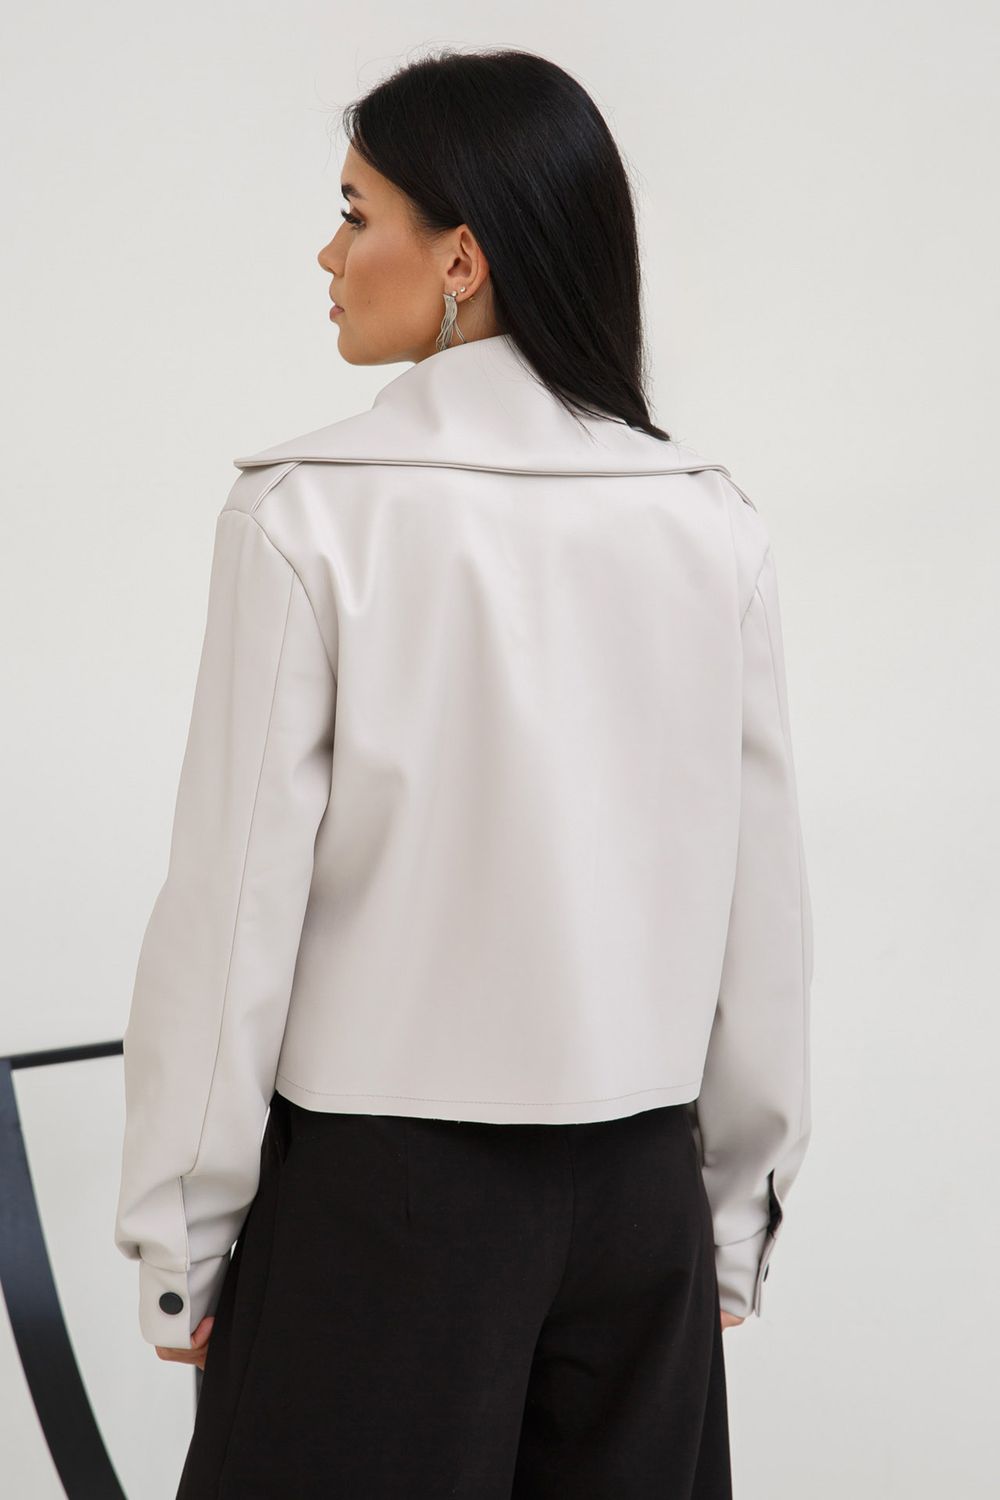 Жіноча шкіряна куртка косуха молочного кольору - фото